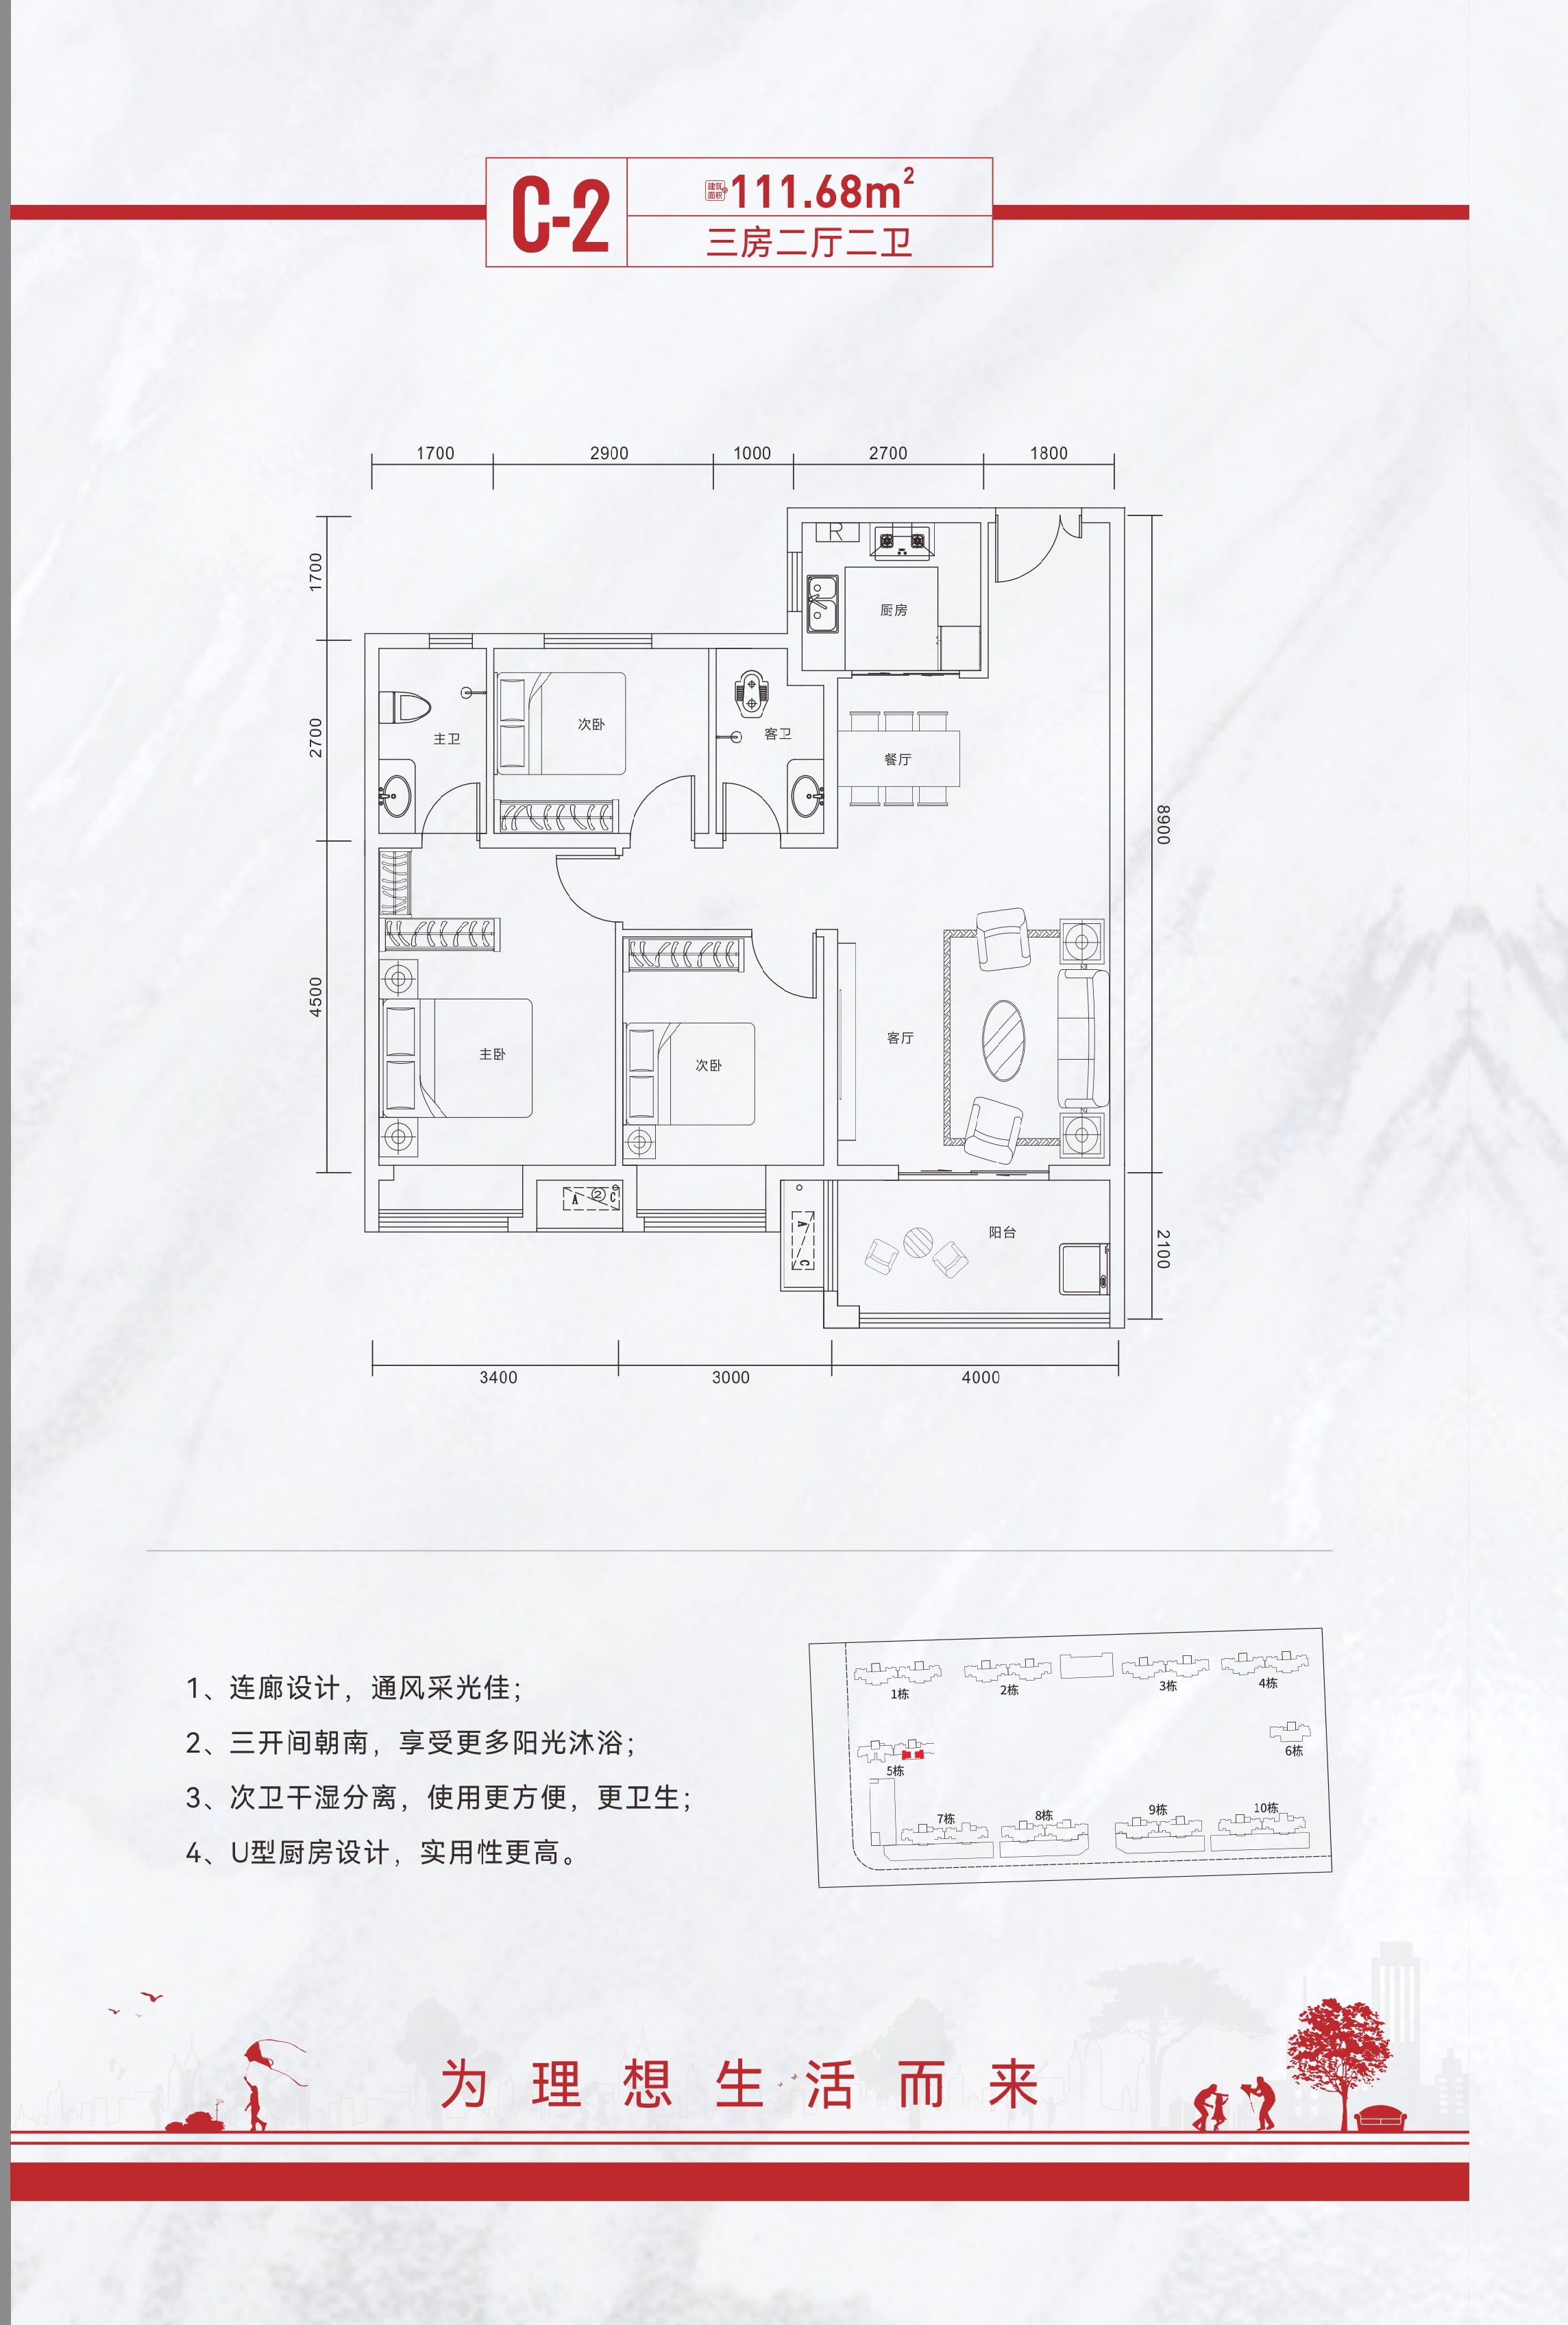  3室户型：三房两厅两卫 面积：111.68㎡ 